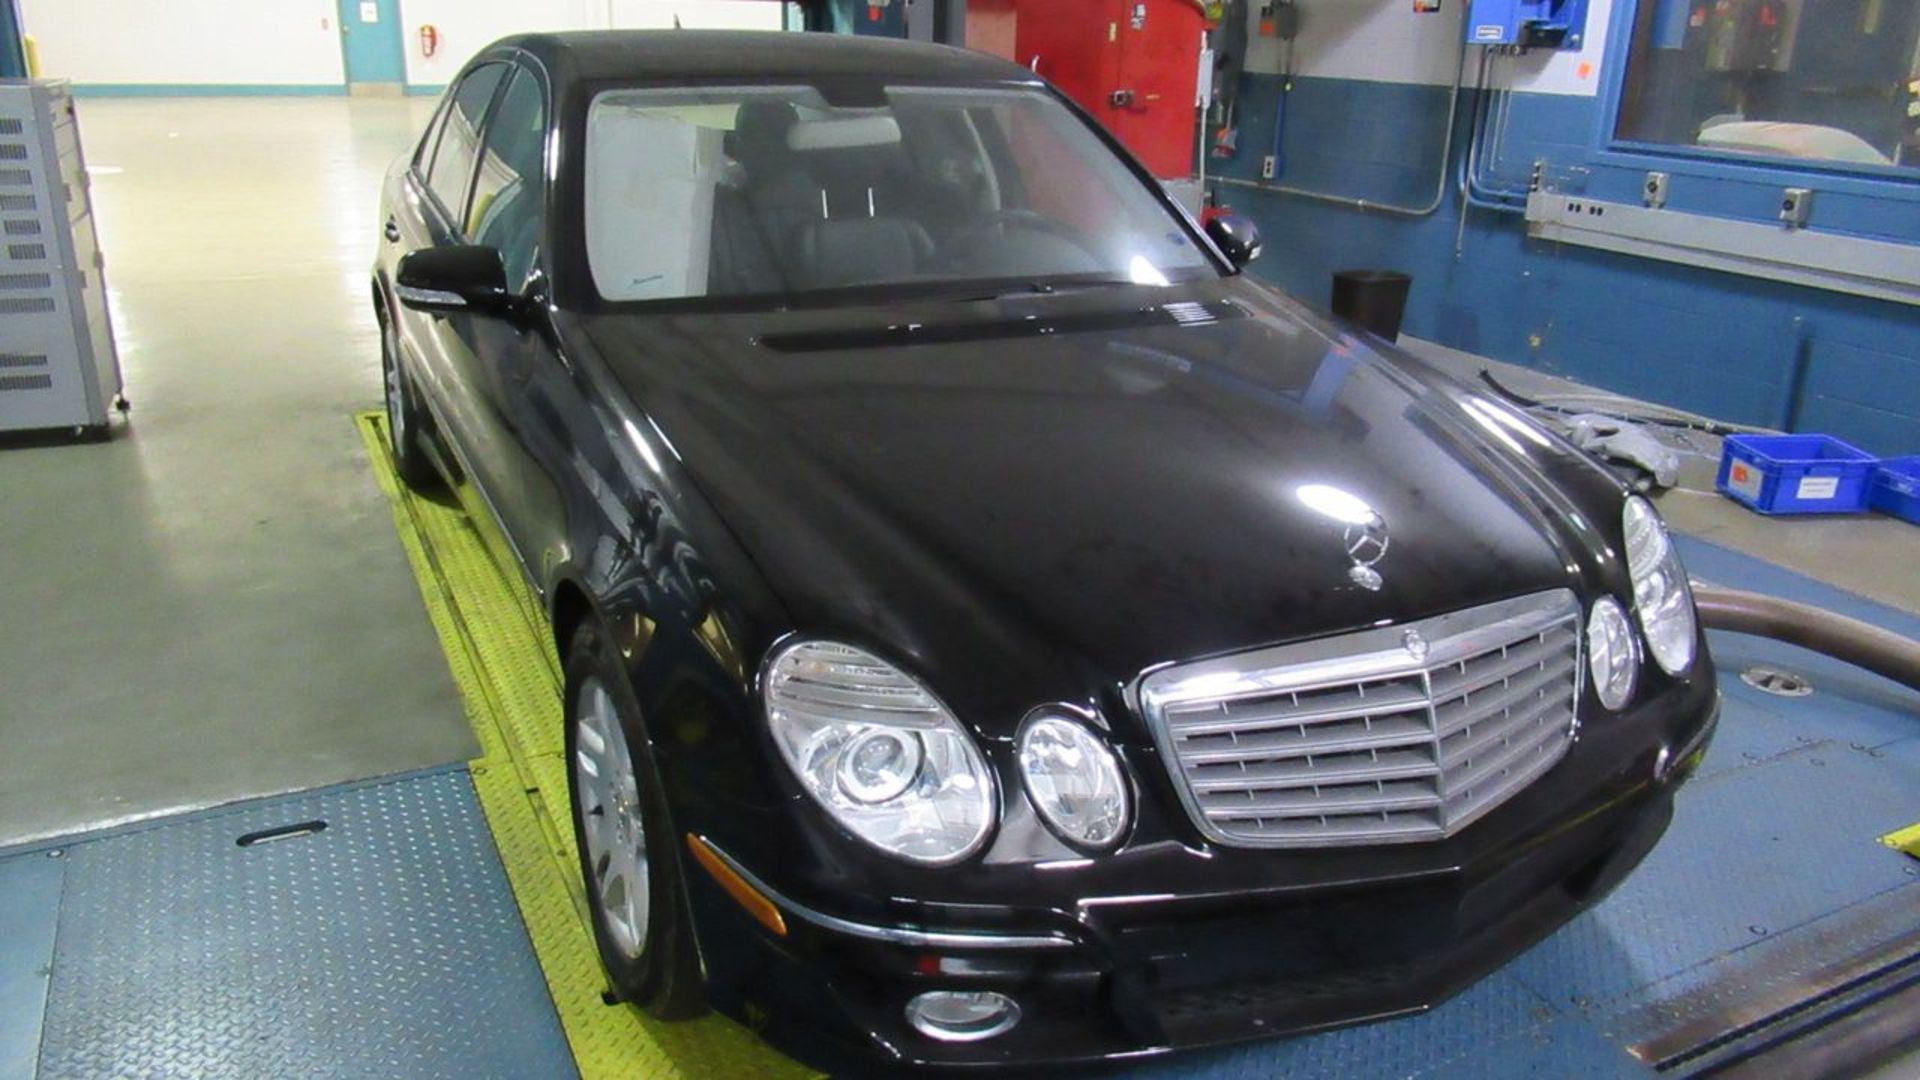 2007 - Mercedes-Benz E320CDI 4-Door Sport Sedan, VIN #: WDBUF22X77B056102; w/ BlueTec 3.0L V6 Diesel - Image 2 of 10